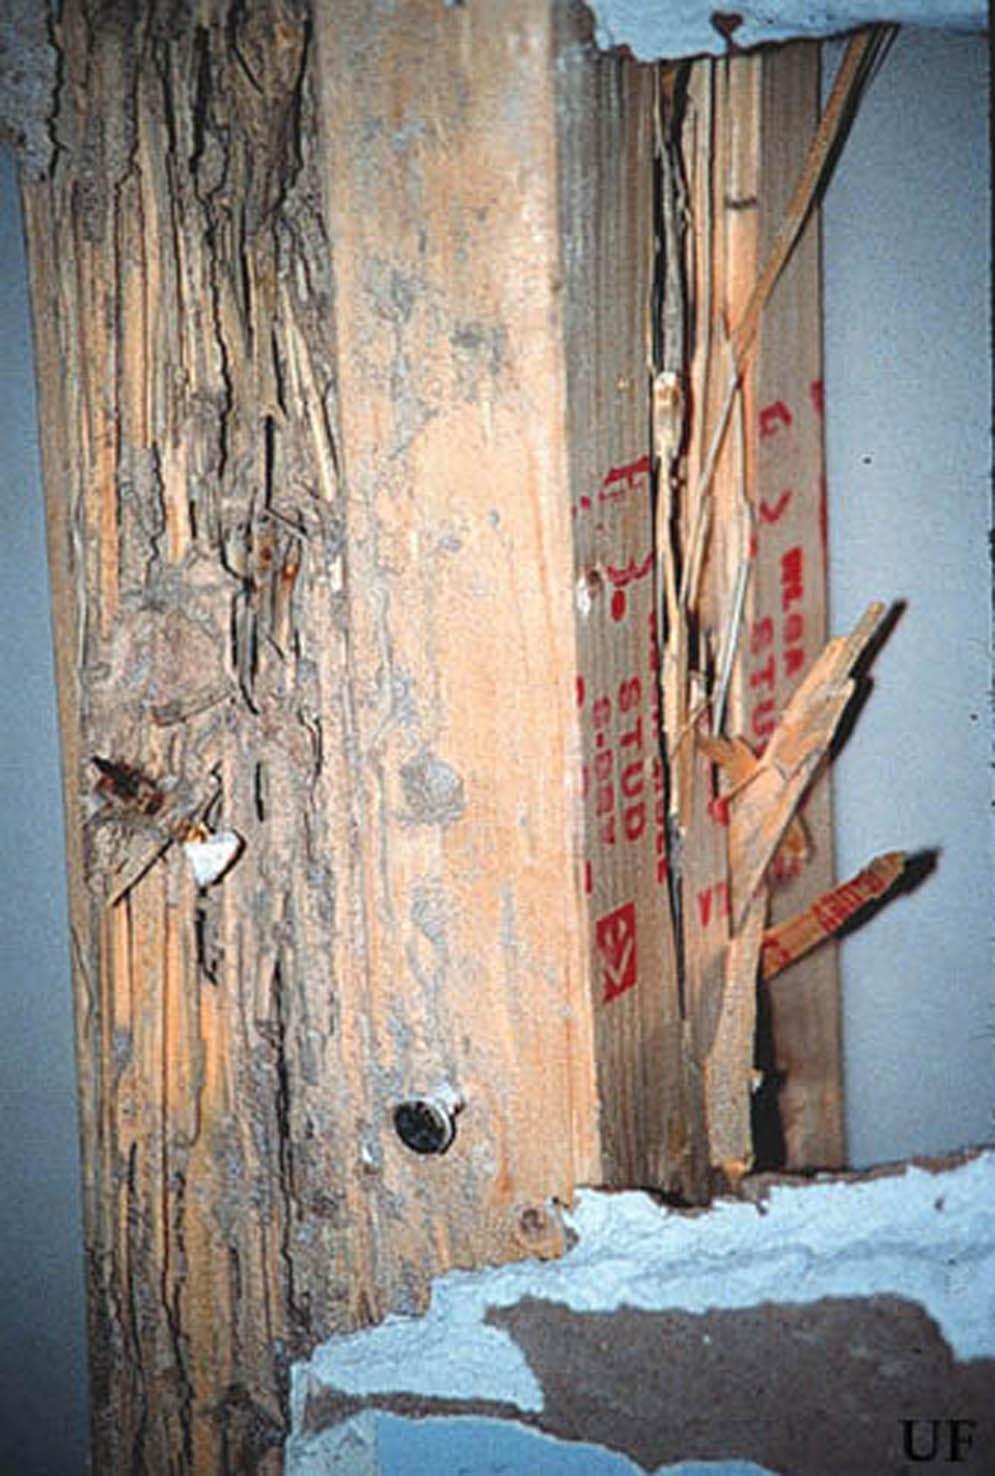 termites to wood molding, Miami, Florida. Figure 11.